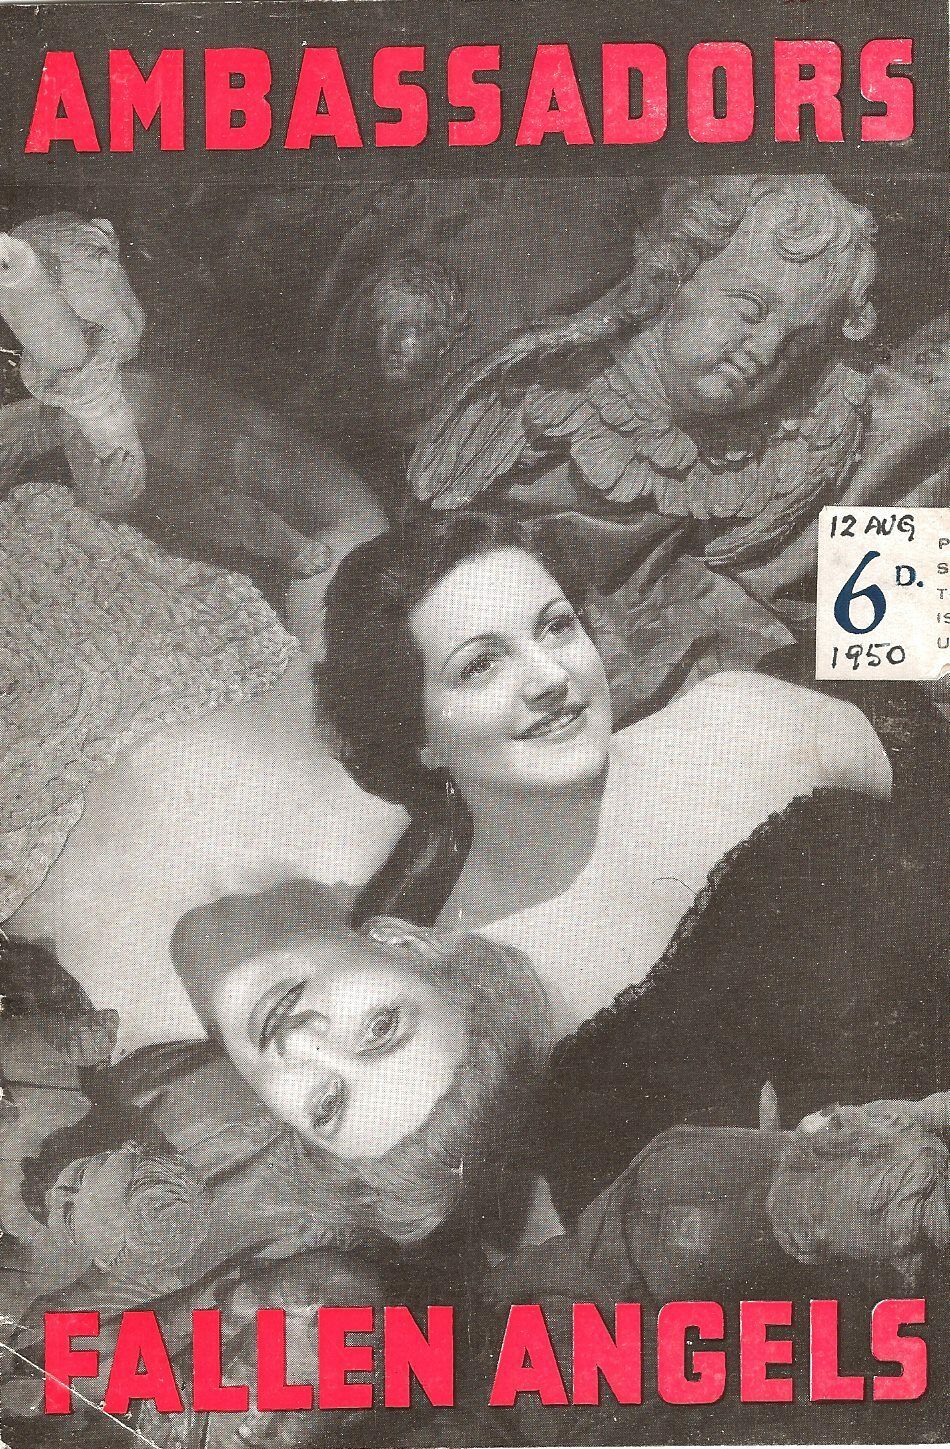 Noel Coward "fallen Angels" Hermione Gingold / Baddeley 1950 London Playbill